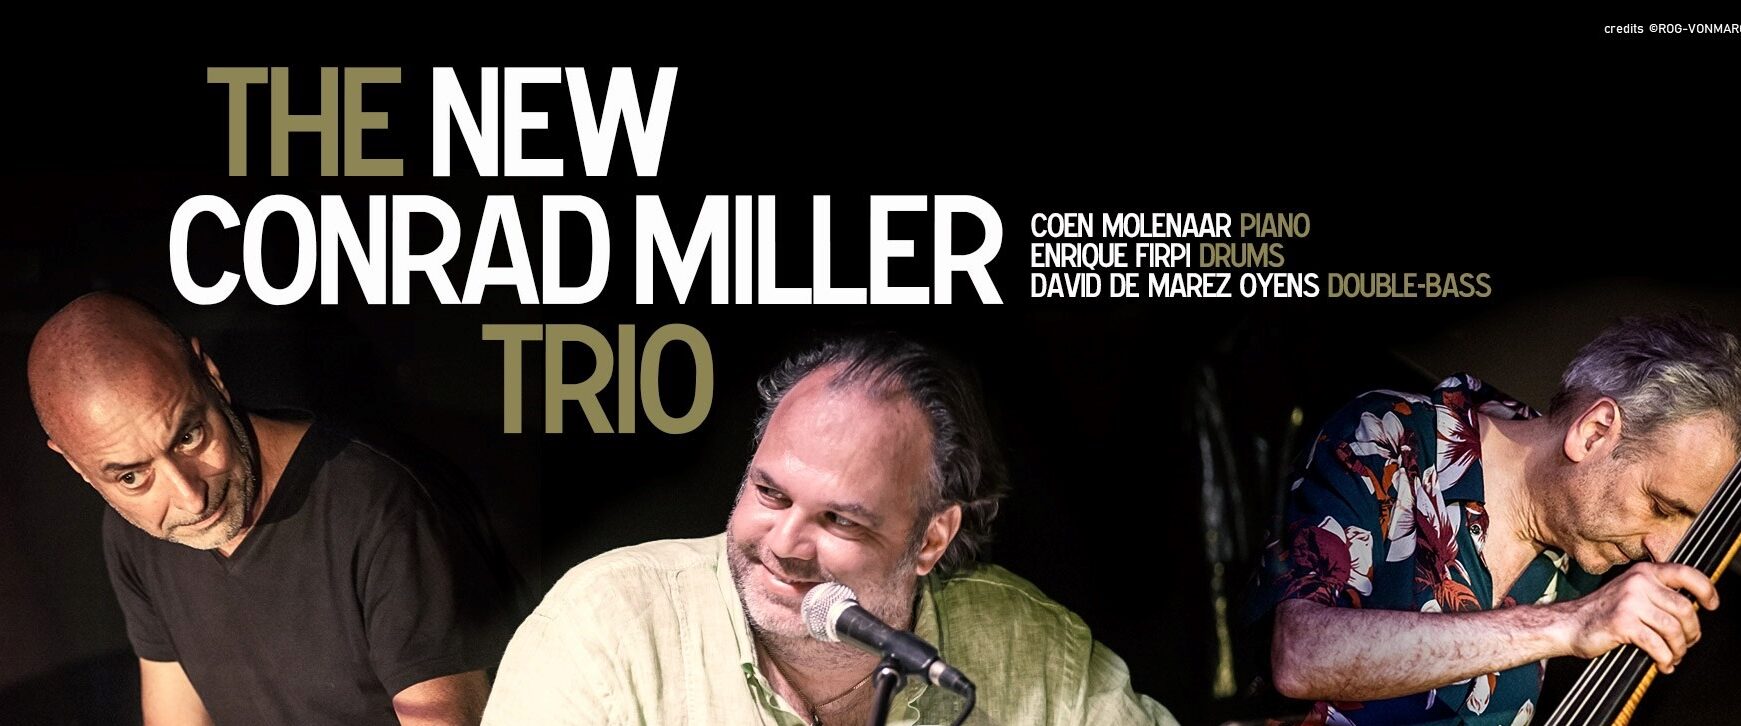 The New Conrad Miller Trio 1